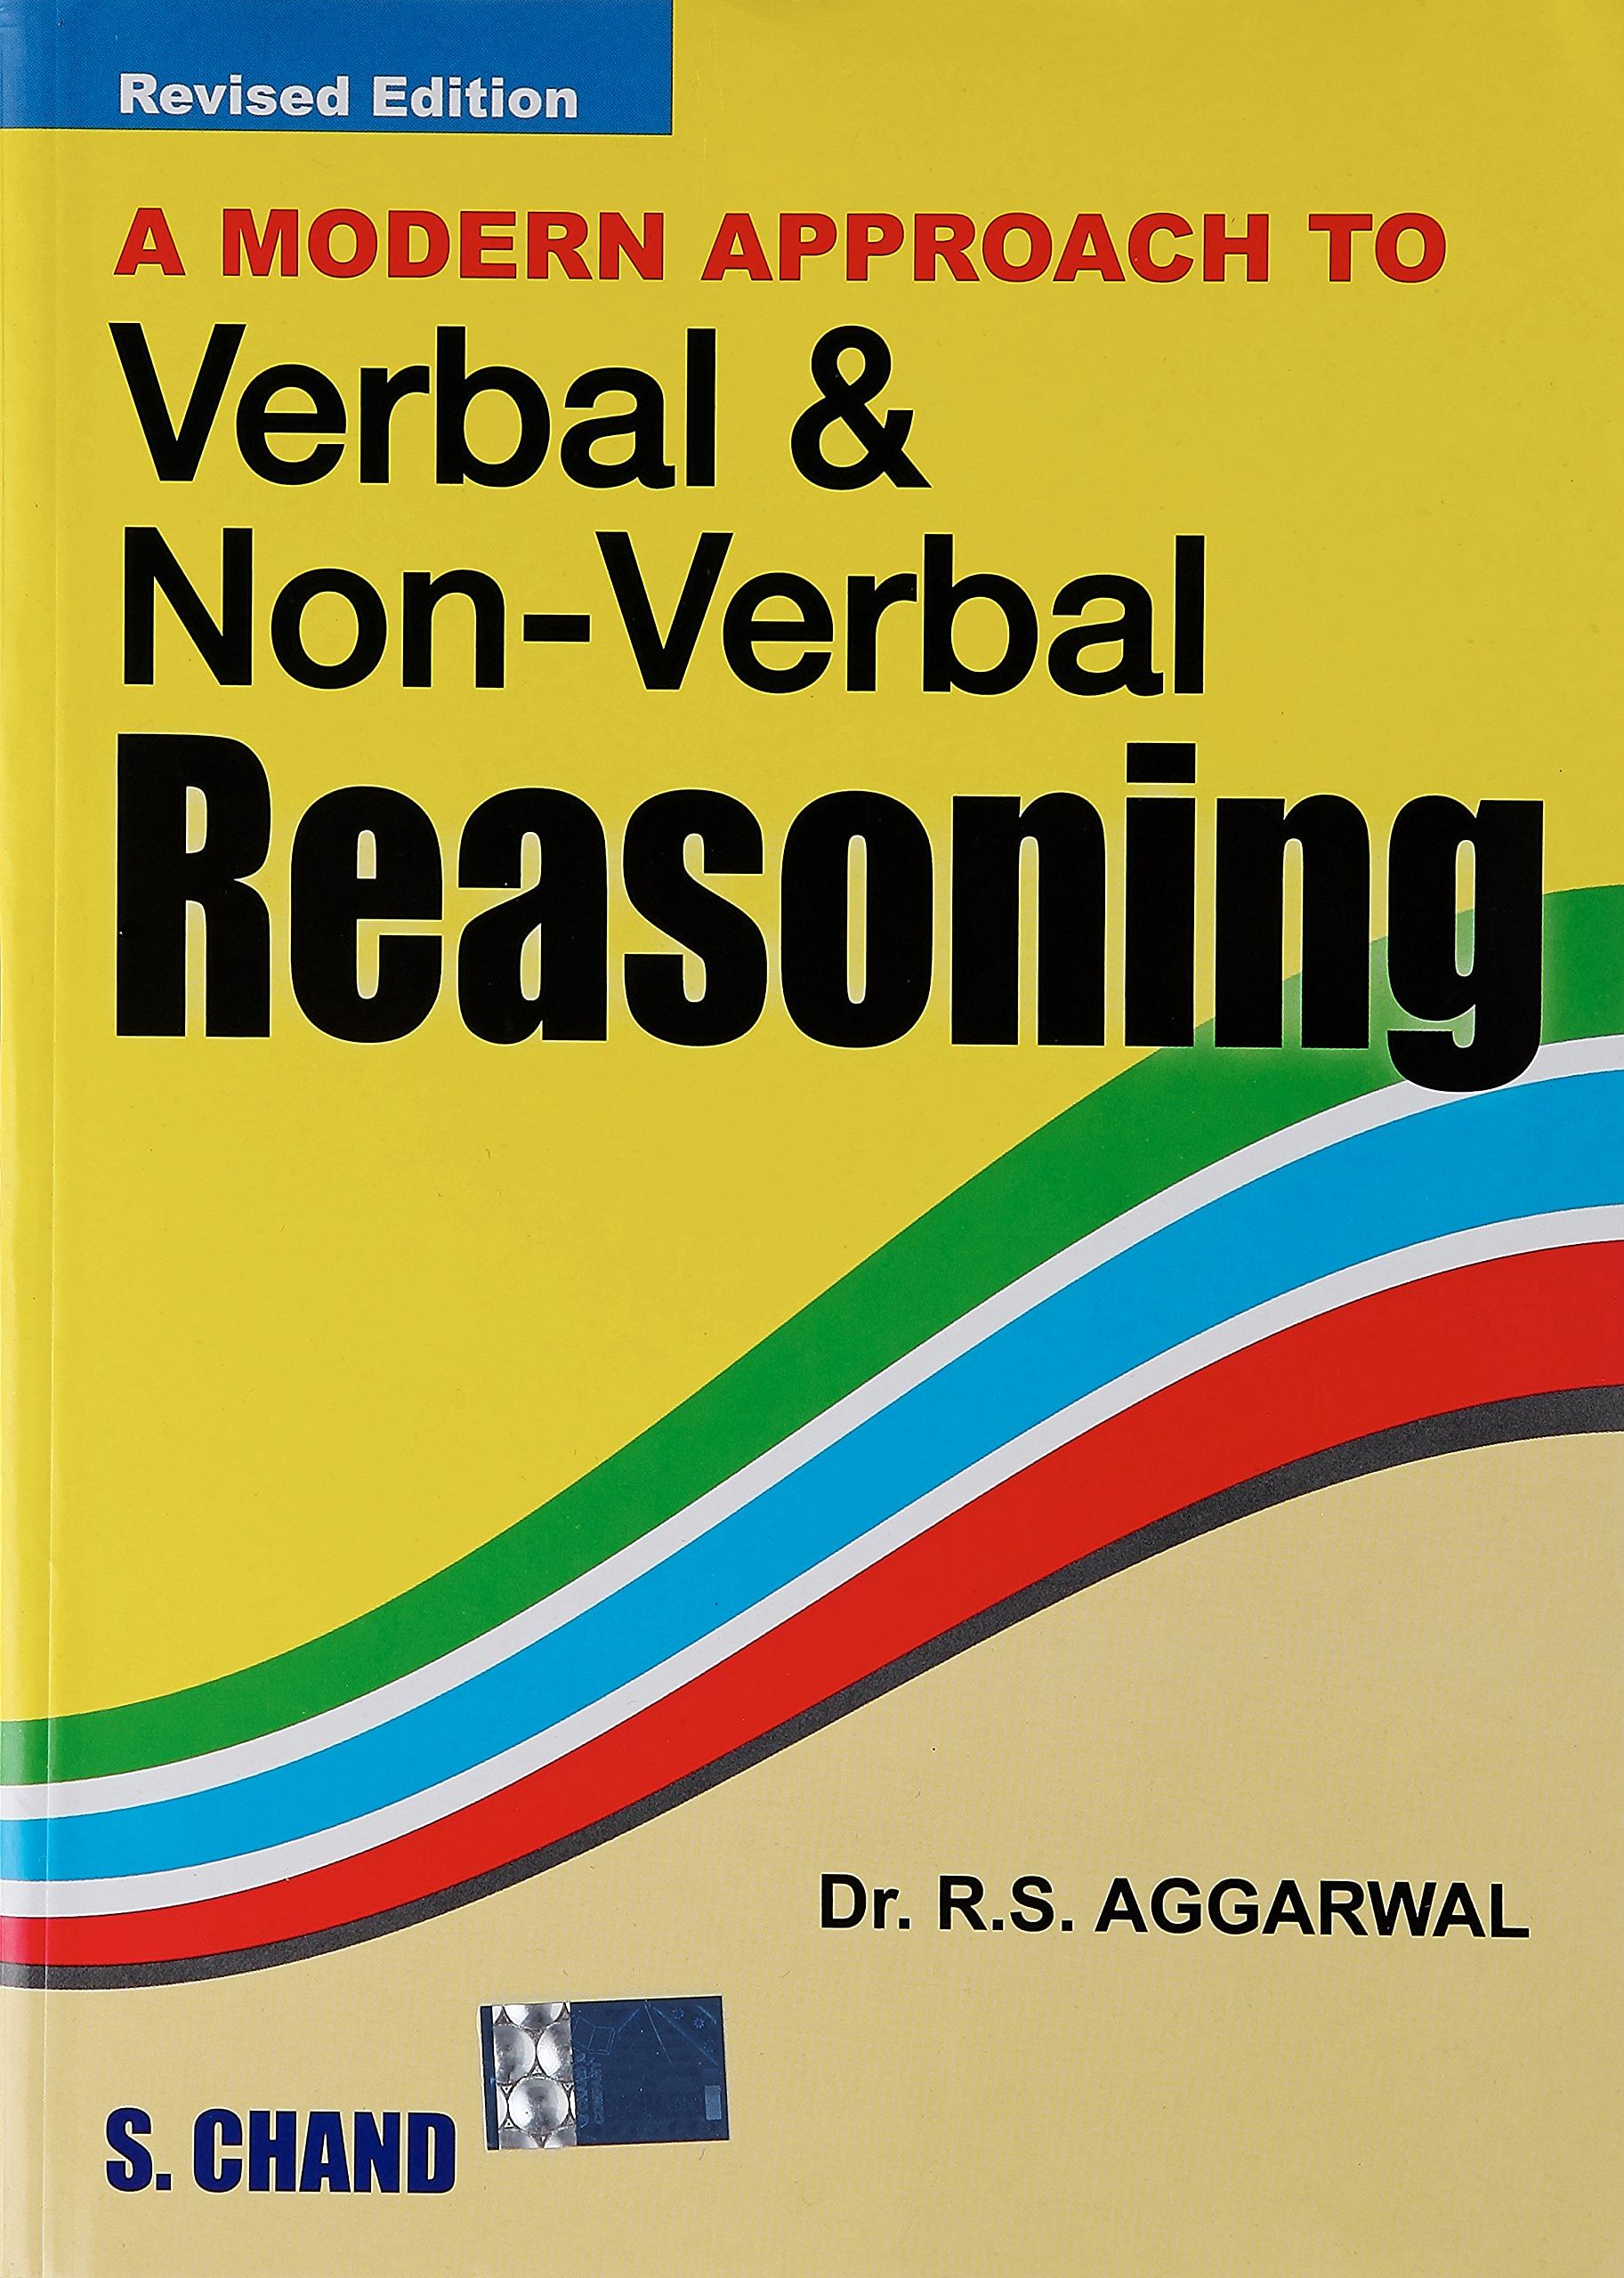 Verbal and Non-Verbal Reasoning